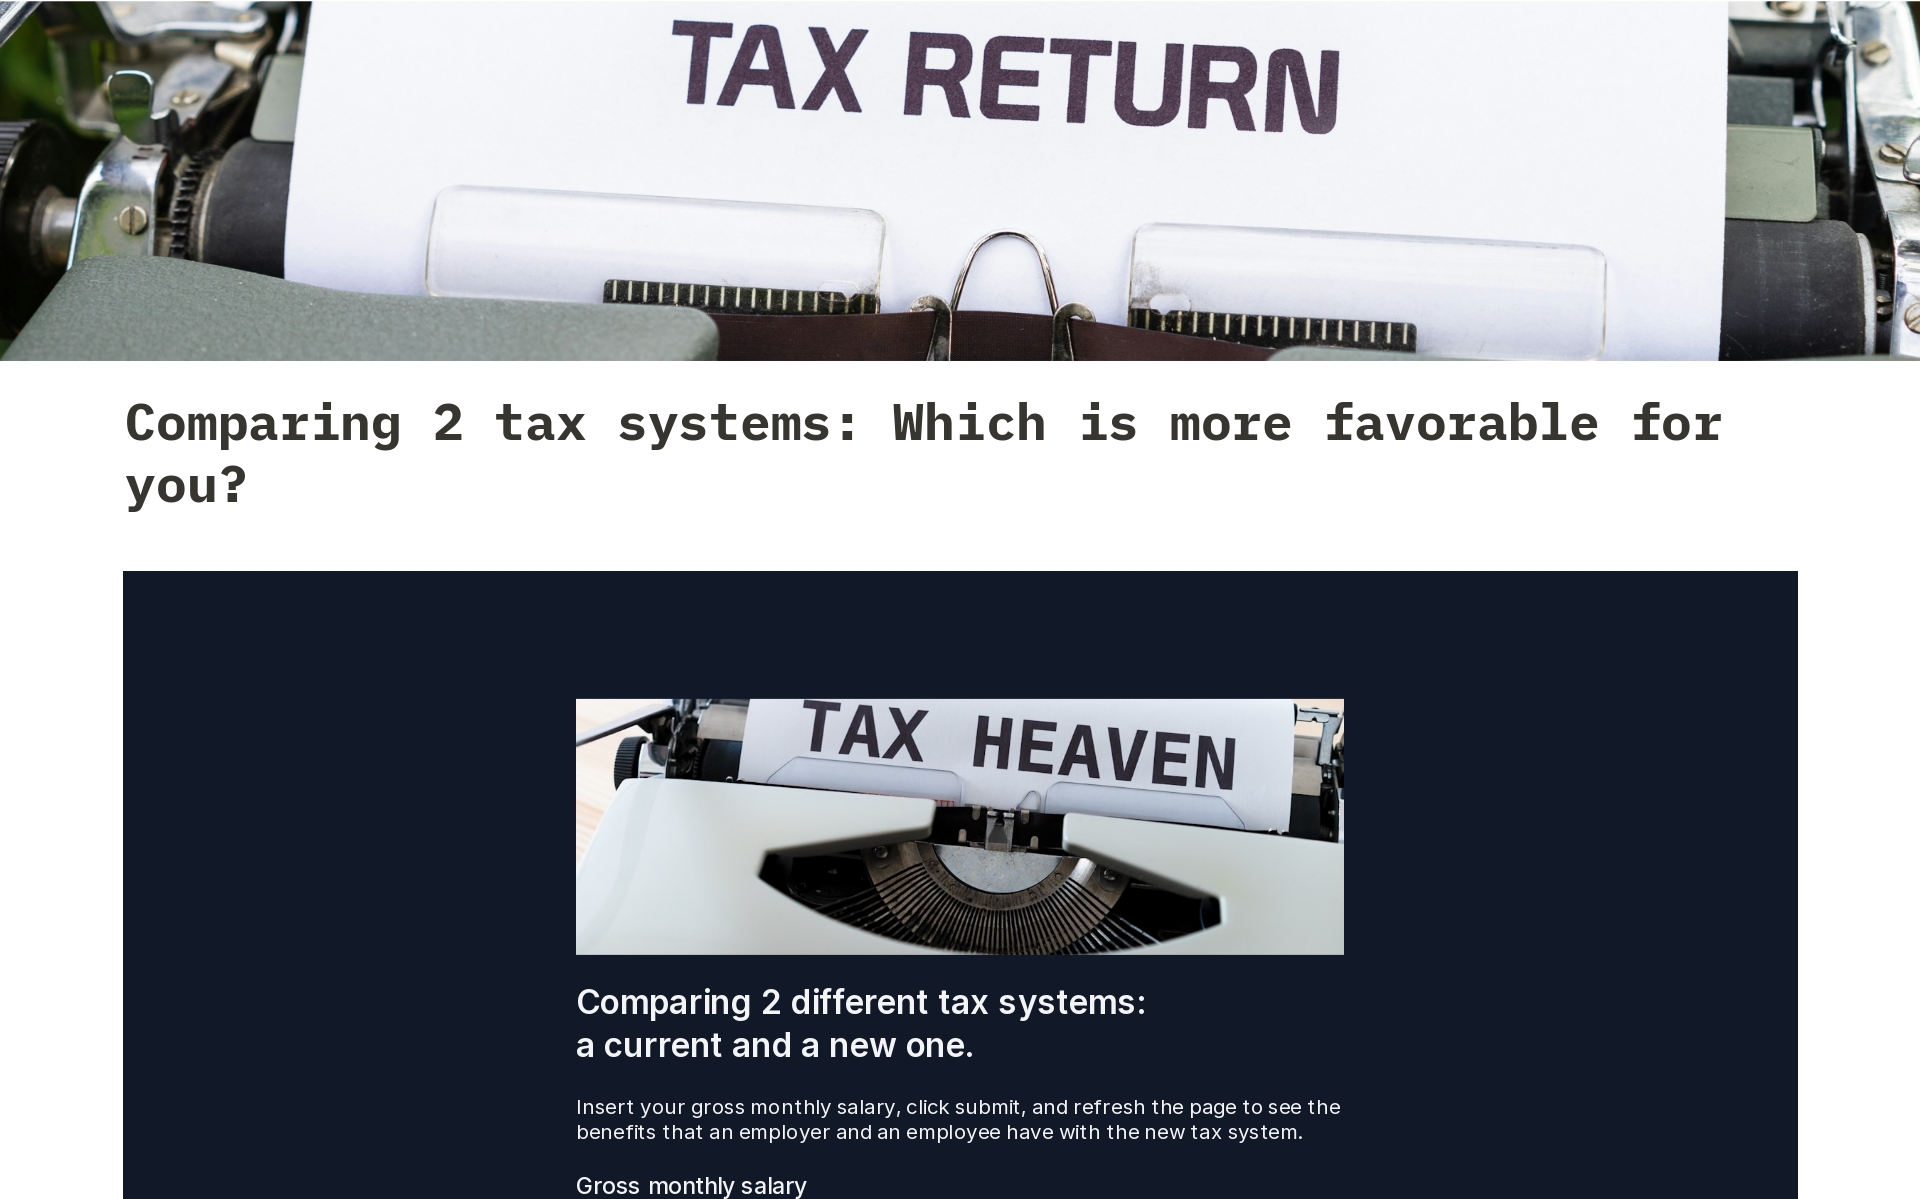 Uma prévia do modelo para Comparing 2 tax systems: a current and a new one